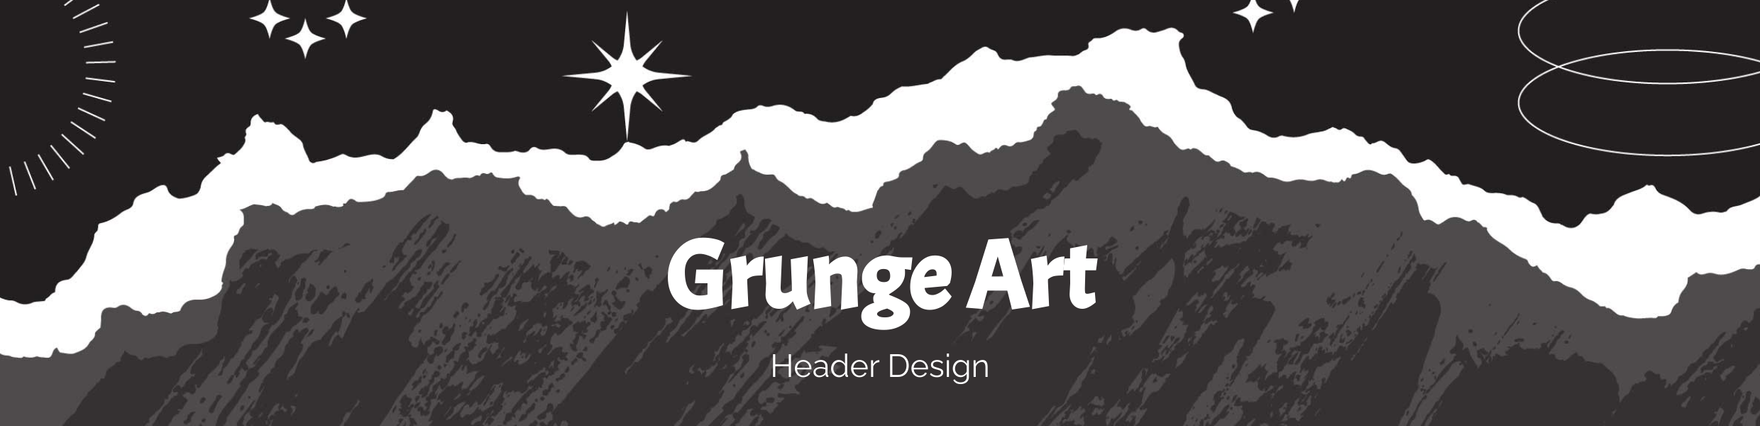 Grunge Art Header Design